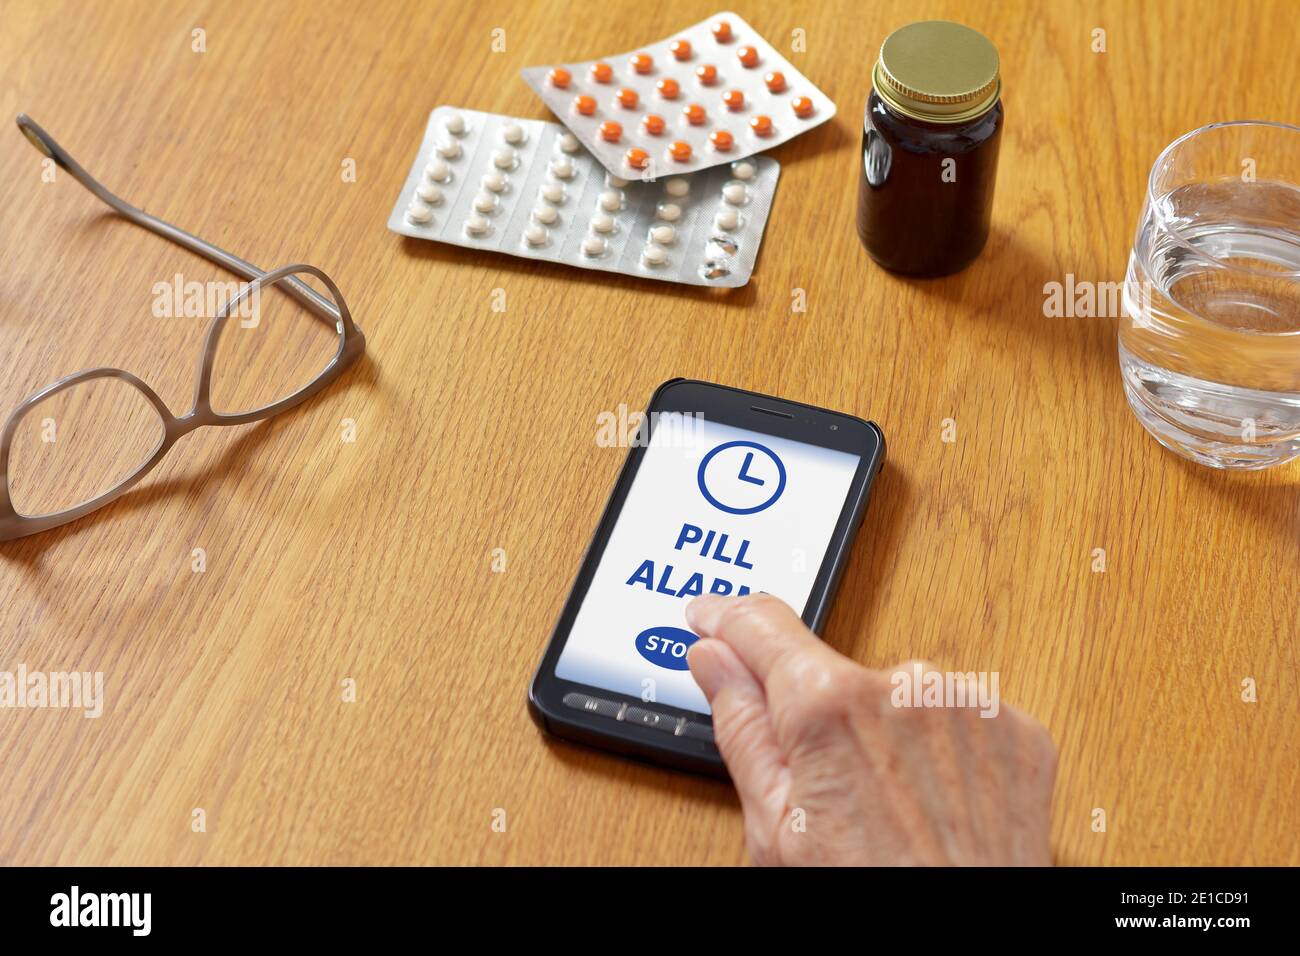 Application d'alarme de pilule sur mobile, cellulaire ou smartphone, avec  verre d'eau, lunettes, médicaments et la main d'une femme âgée Photo Stock  - Alamy